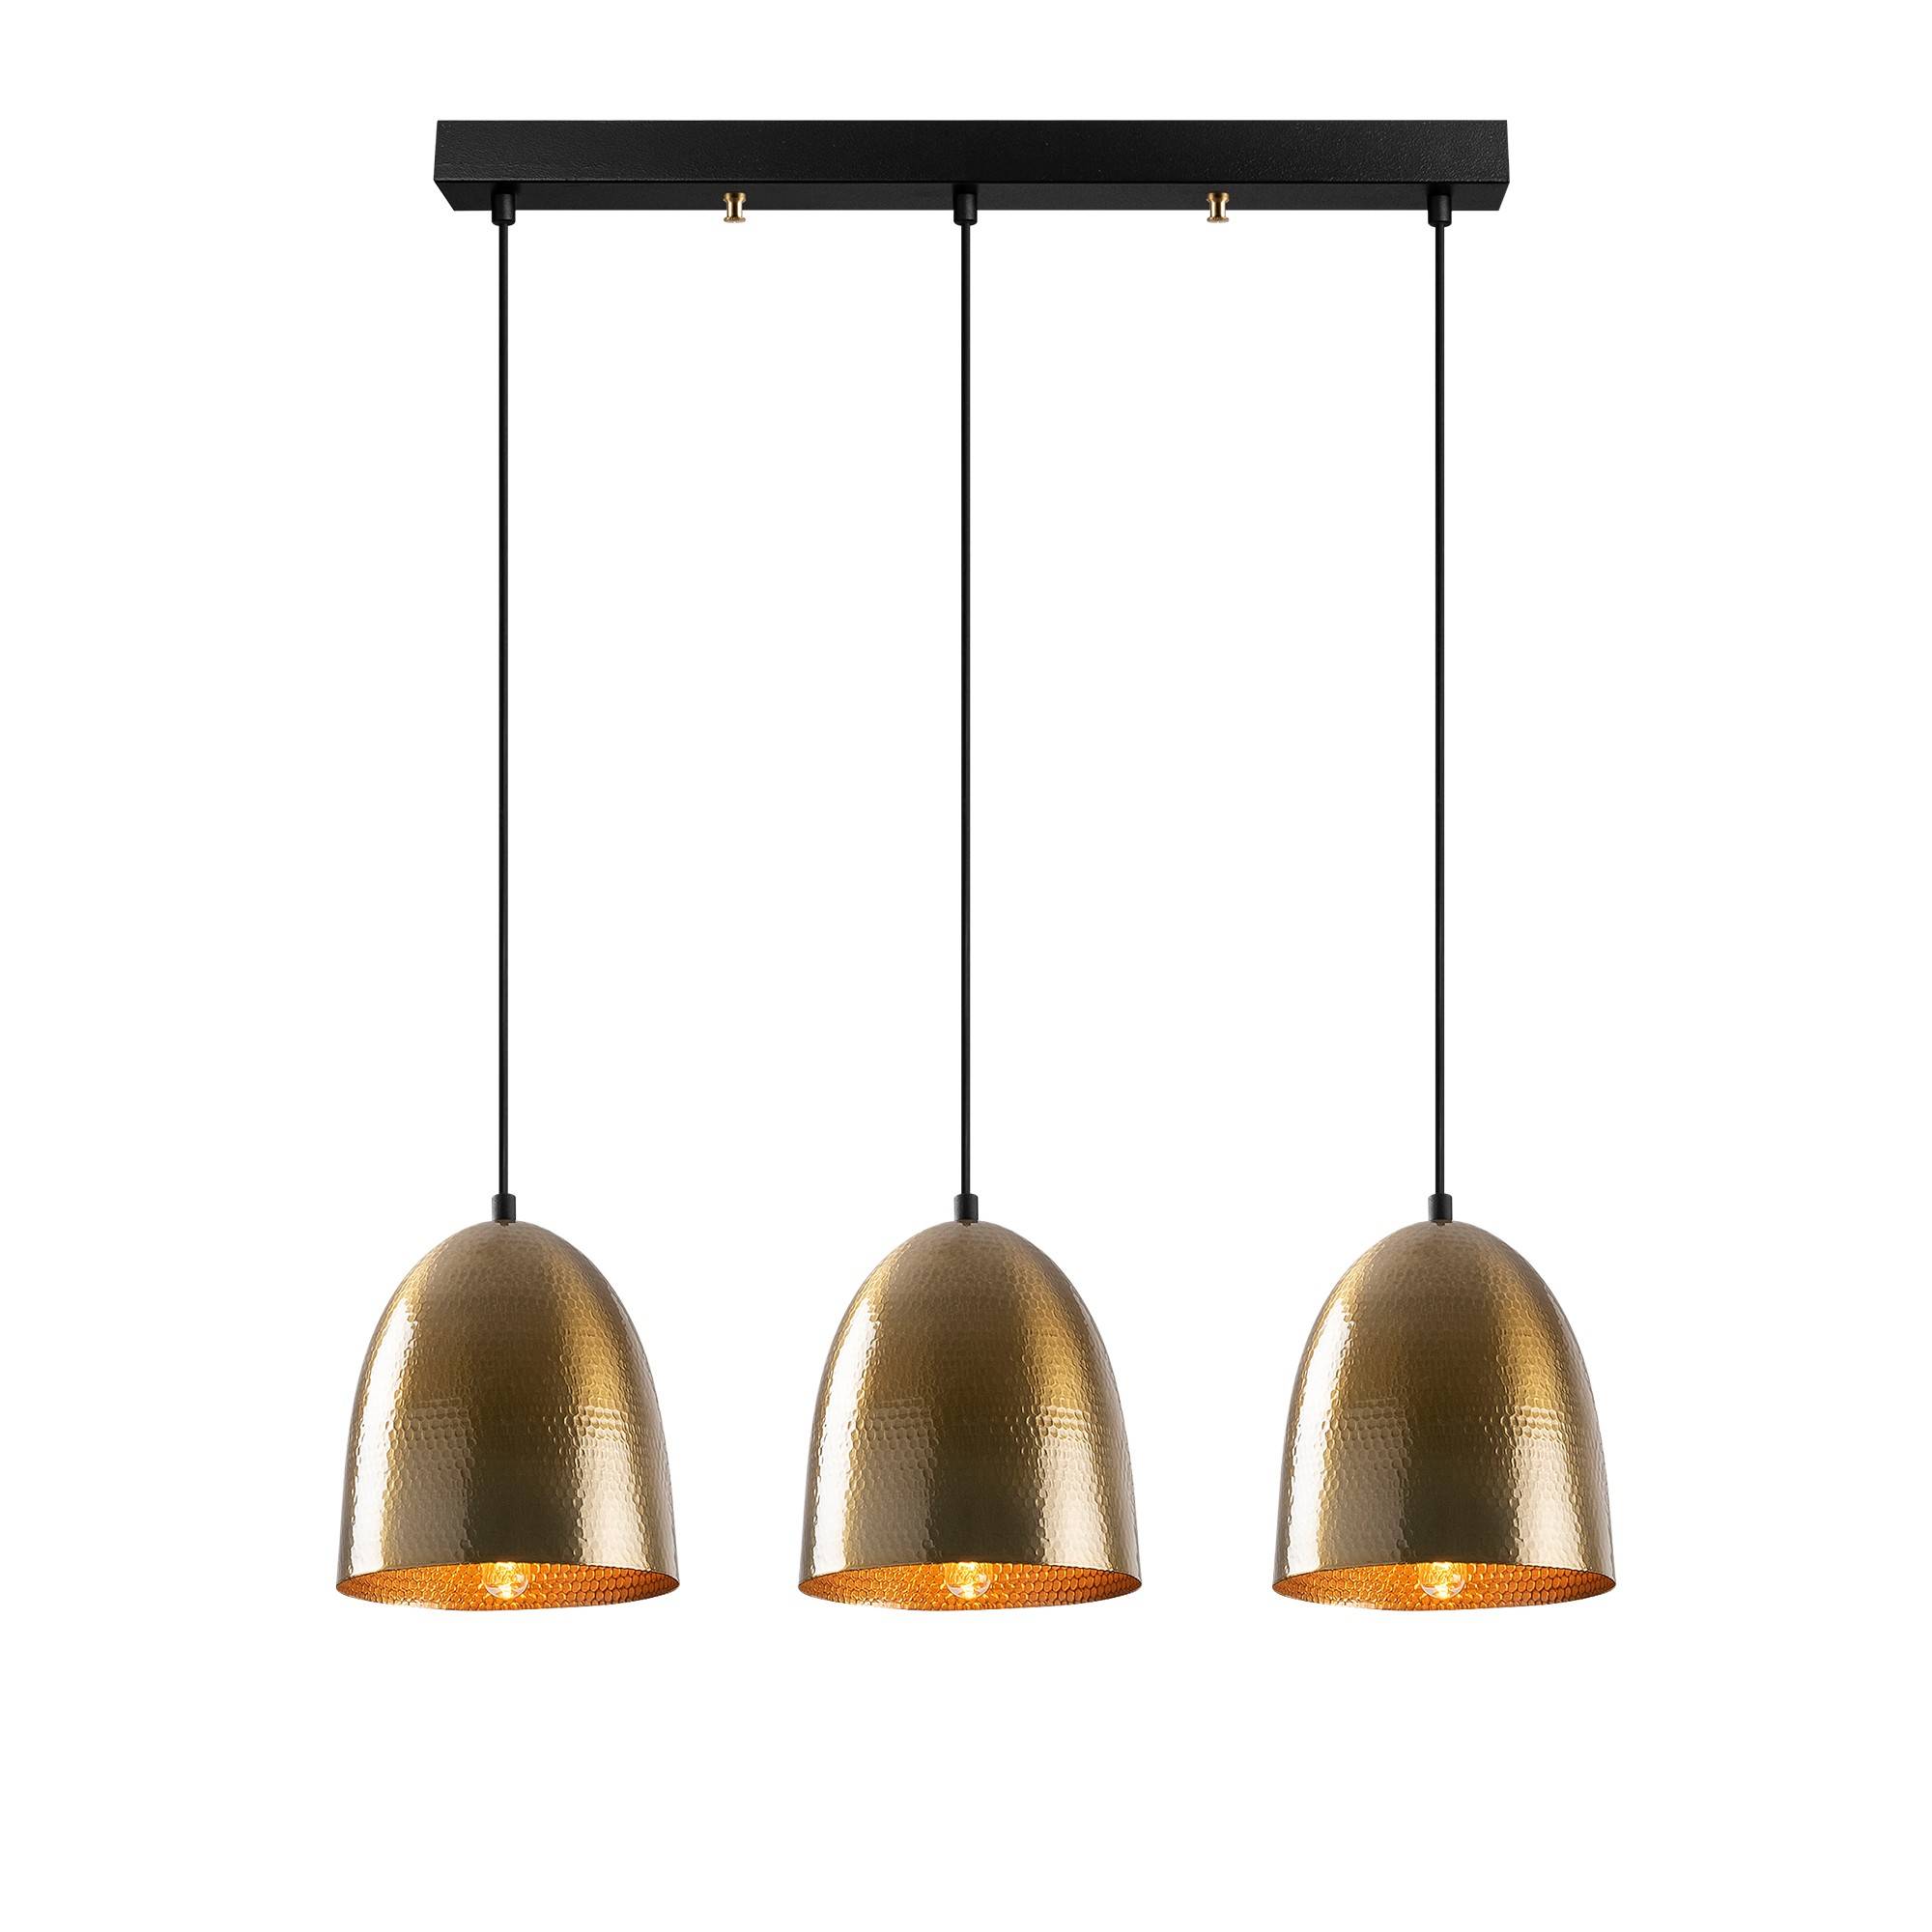 Hängeleuchte 3 Glockenlampen in einer Reihe Gakuli L70cm Metall gehämmert Antikgold glänzend